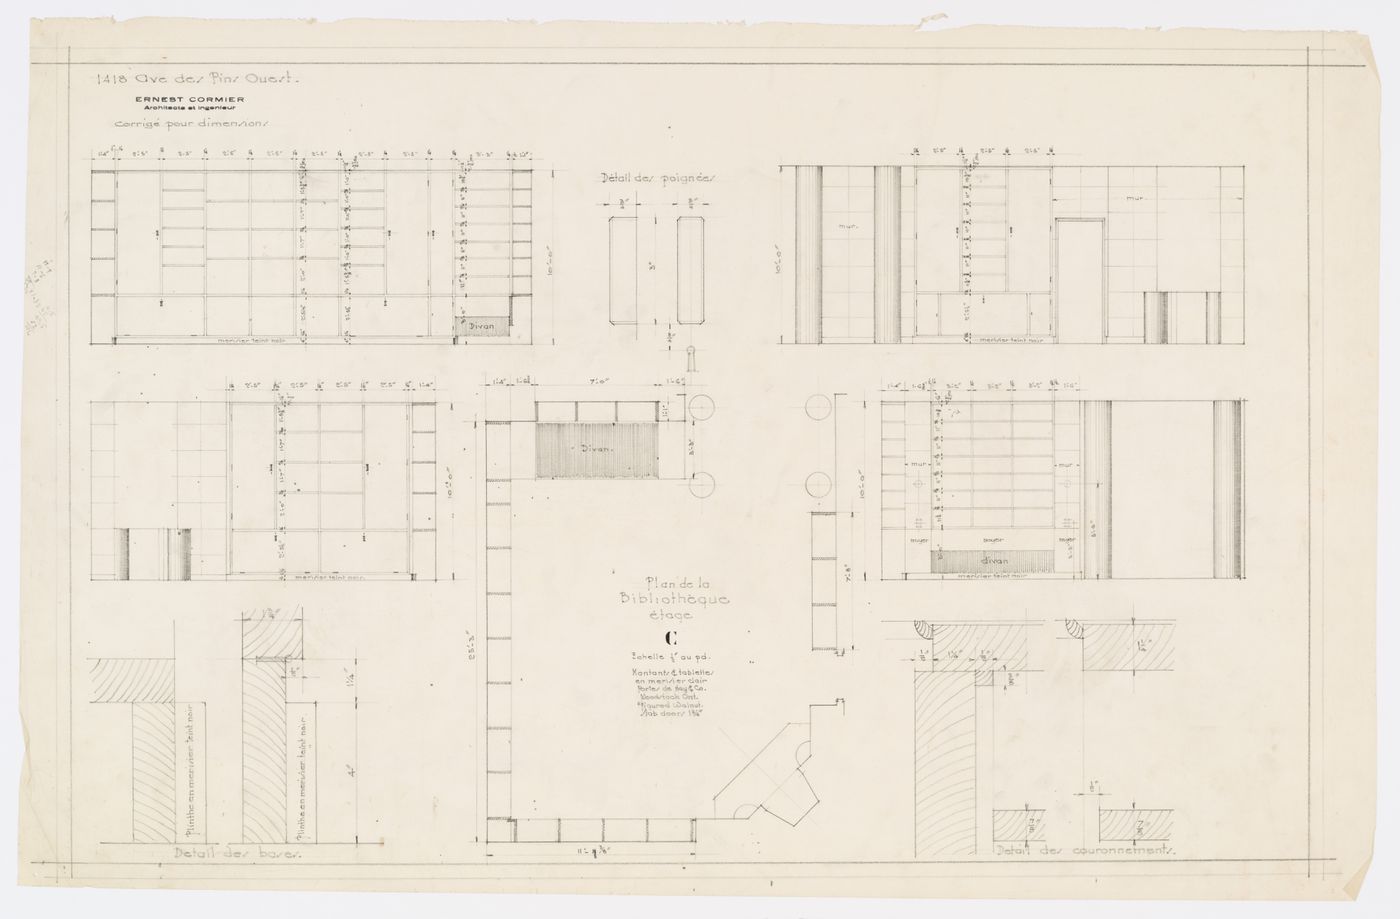 Plan de la bibliothèque,  Résidence Ernest Cormier, 1418 Avenue des Pins Ouest, Montréal, Canada (1929-1957)